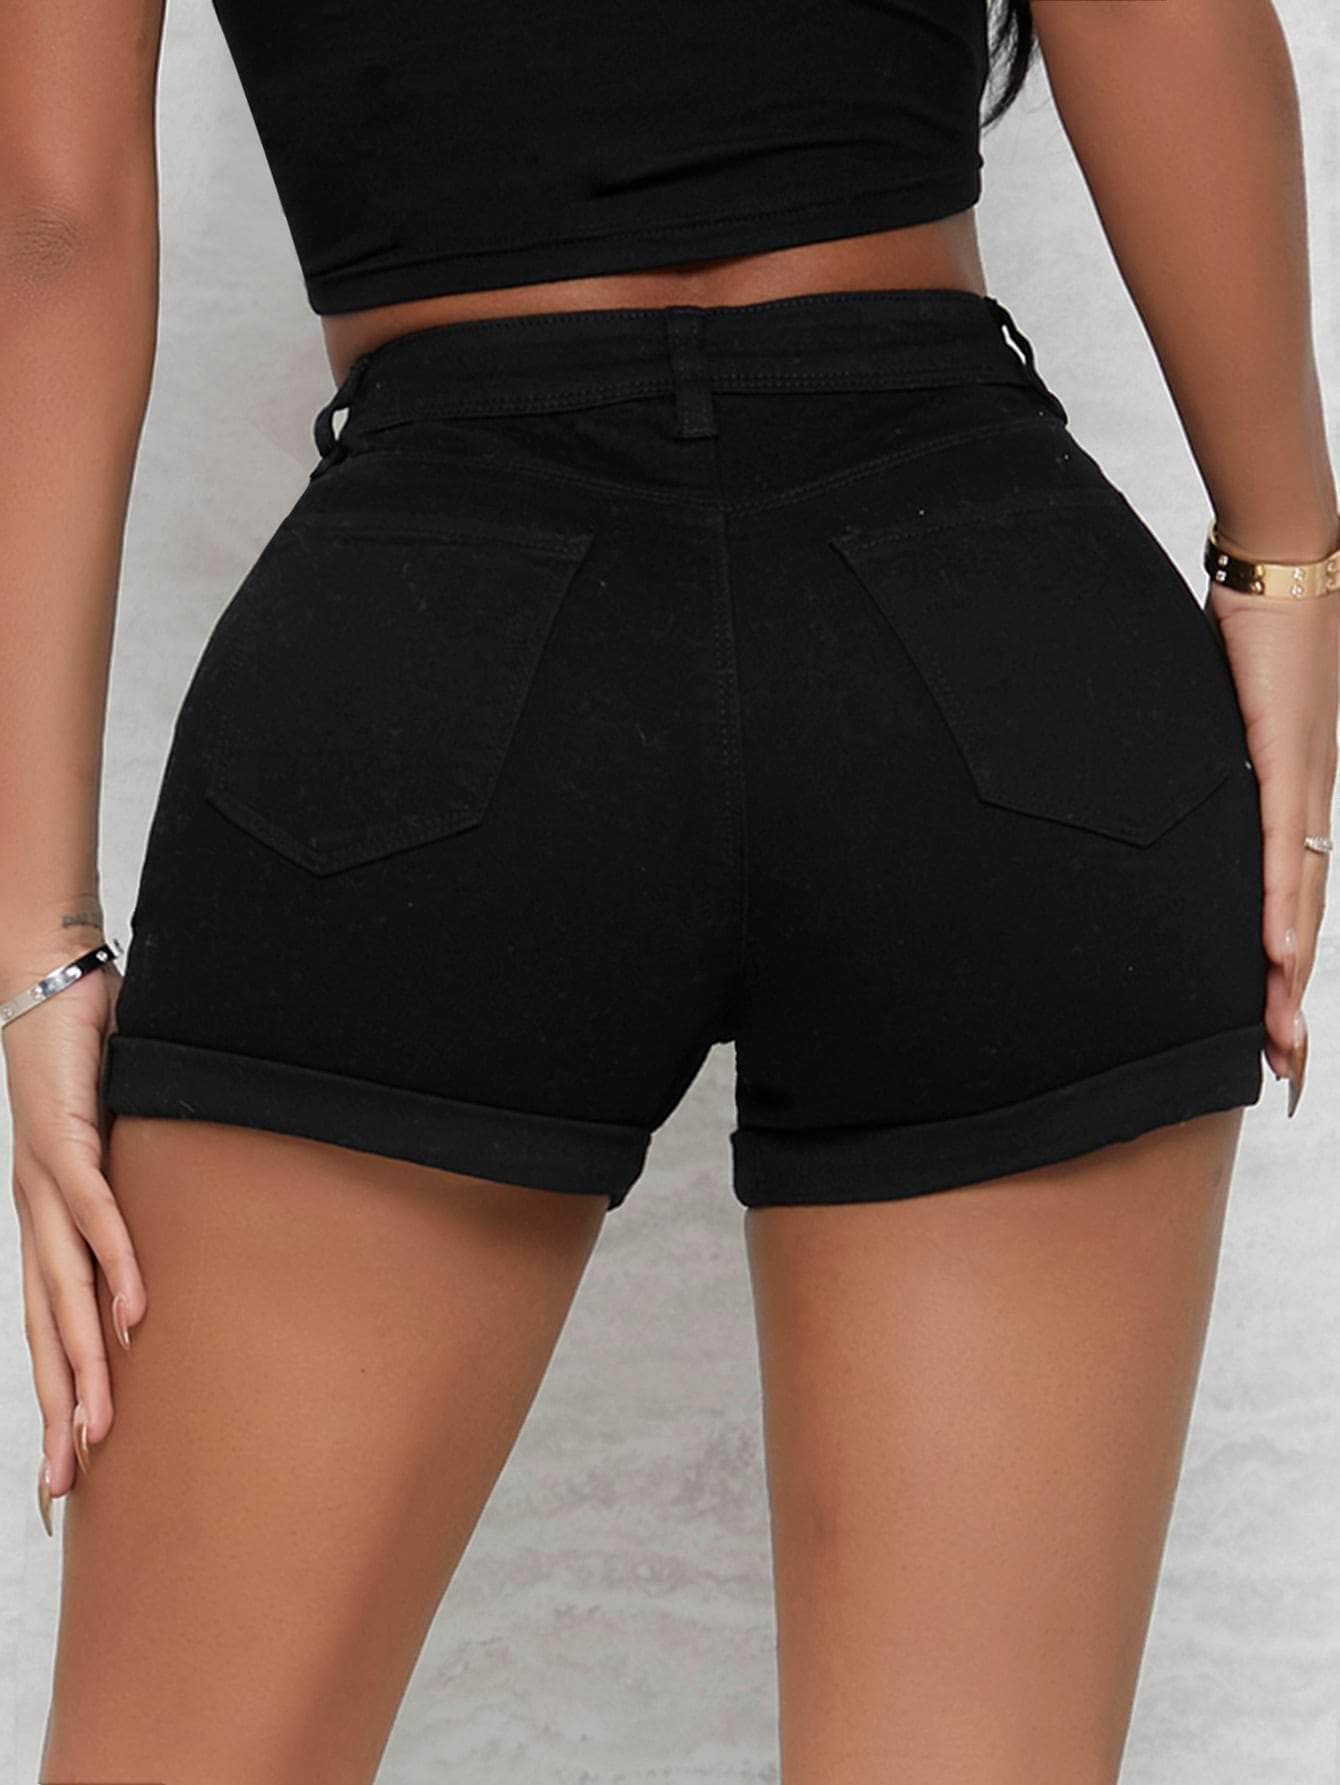 Negro / 27 shorts jean de cintura alta